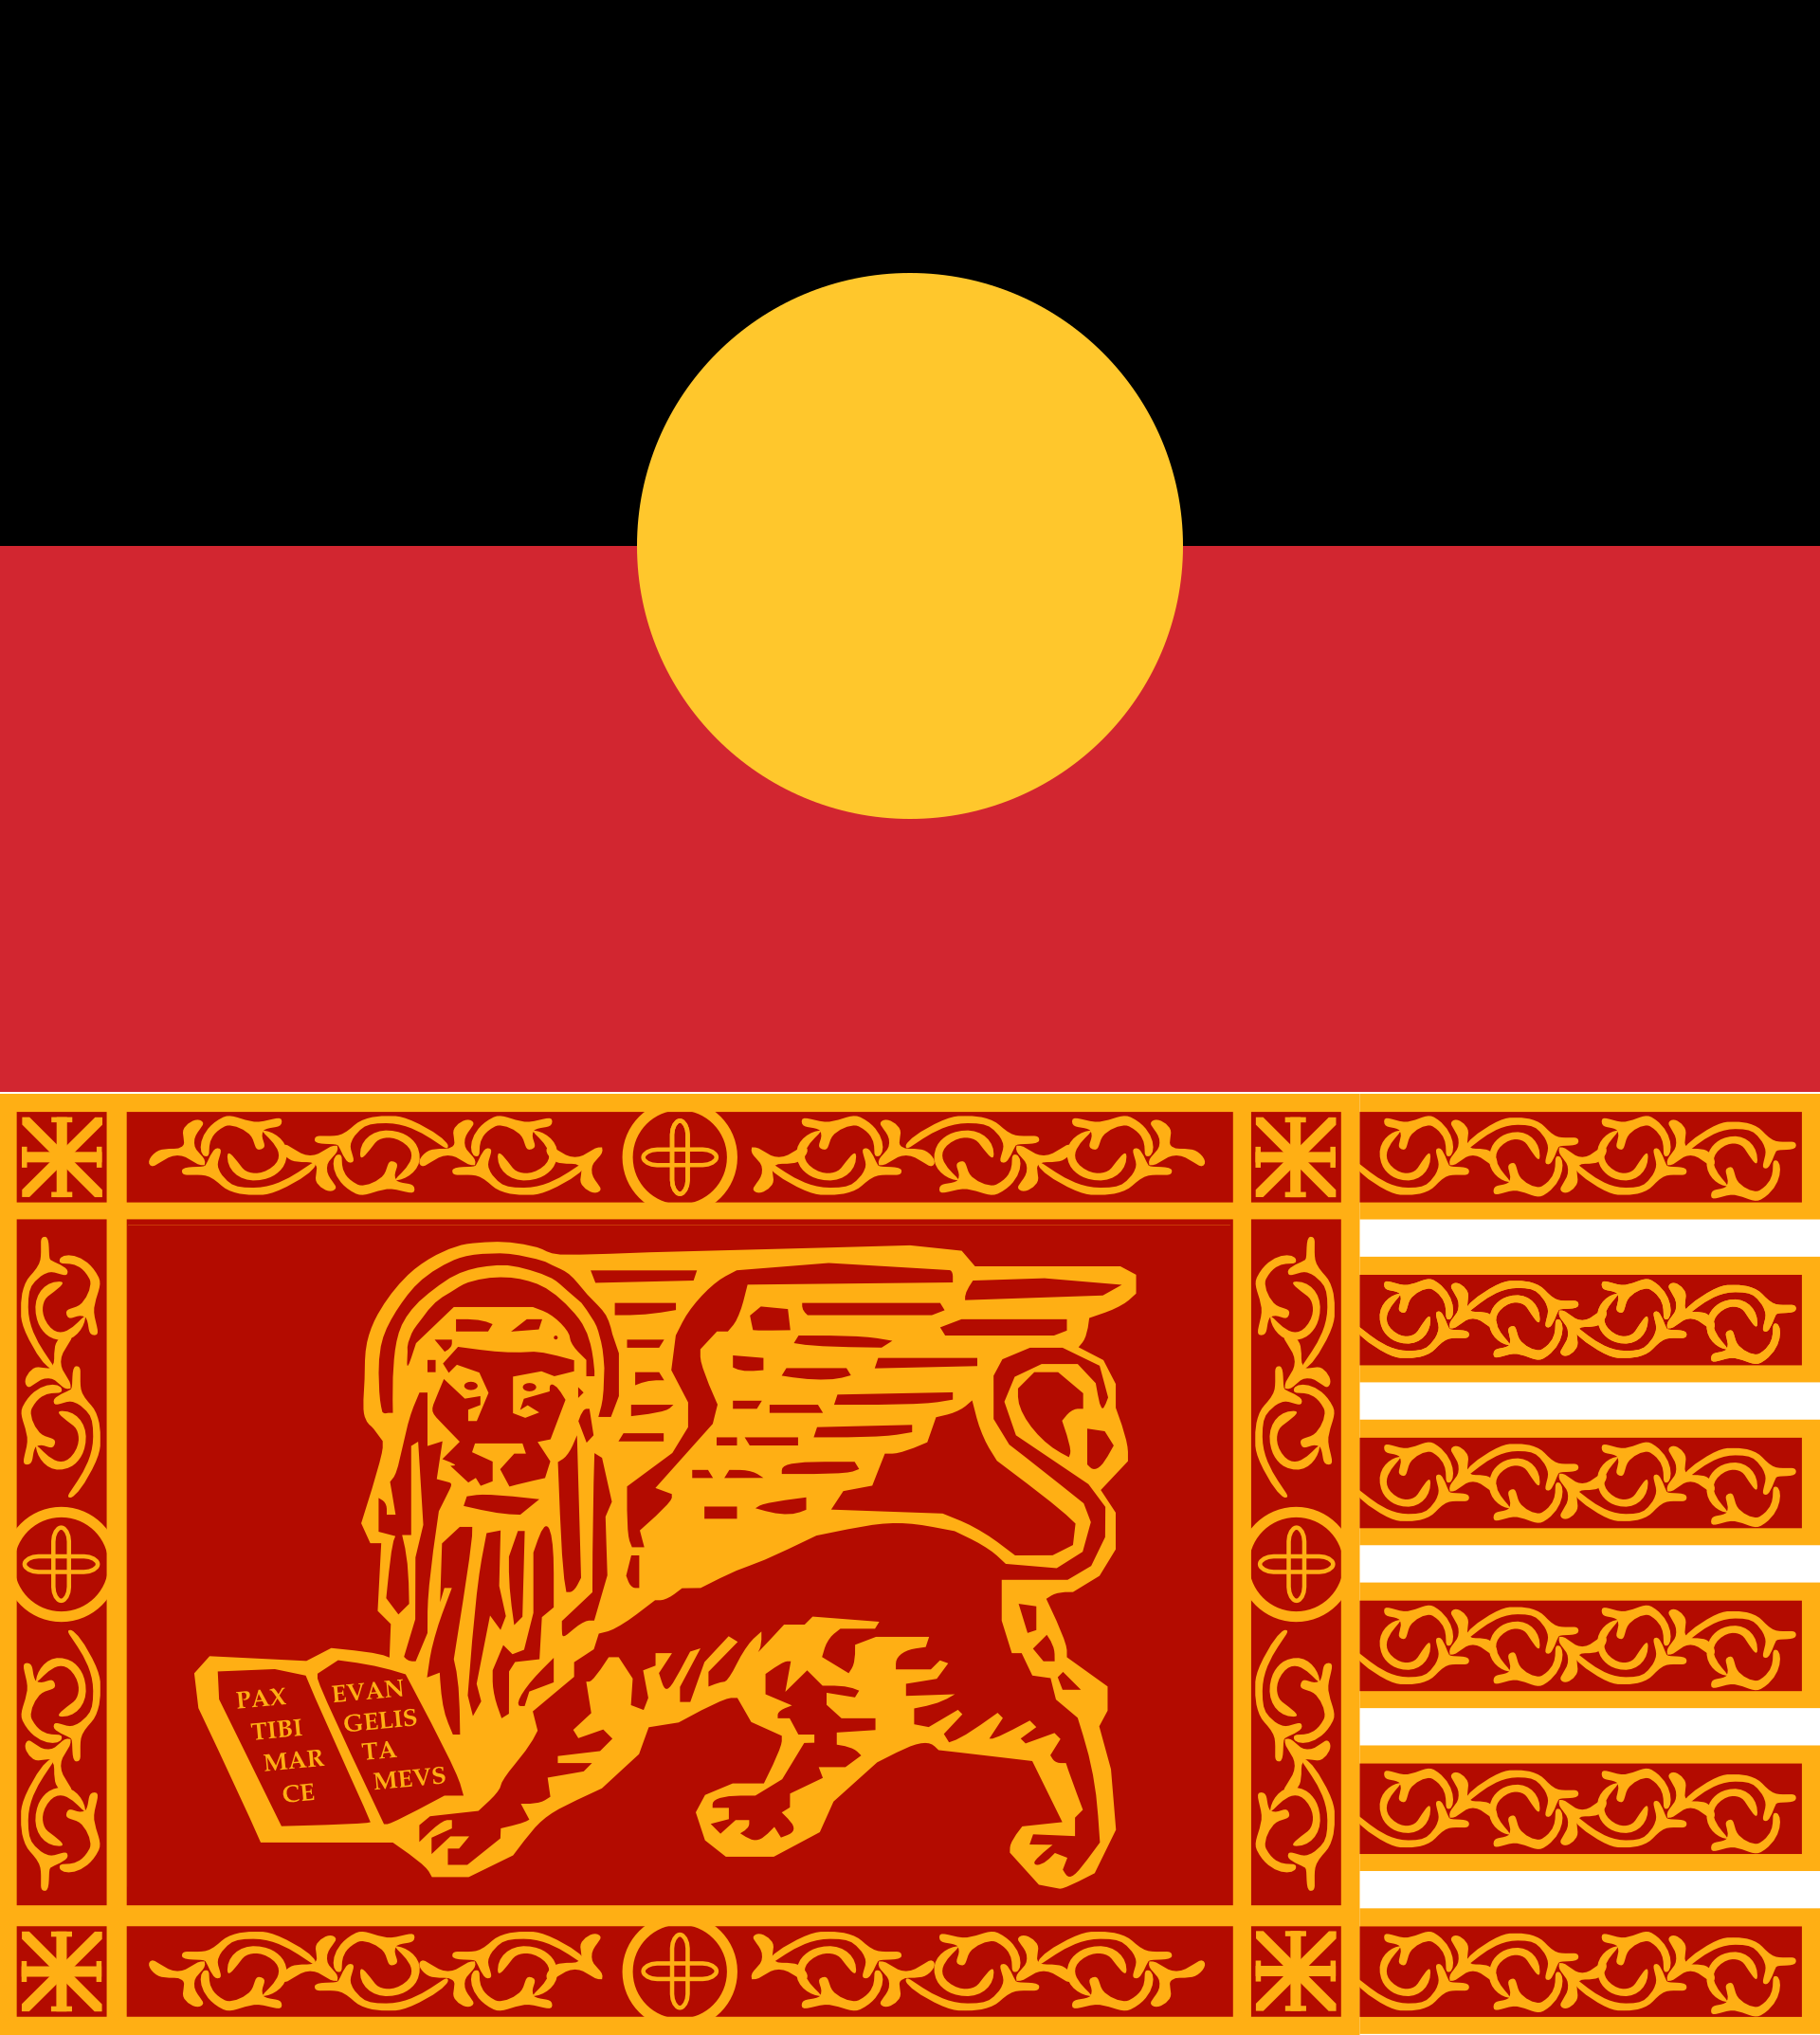 La bandiera aborigena e il gonfalone di San Marco (fonte wikipedia).